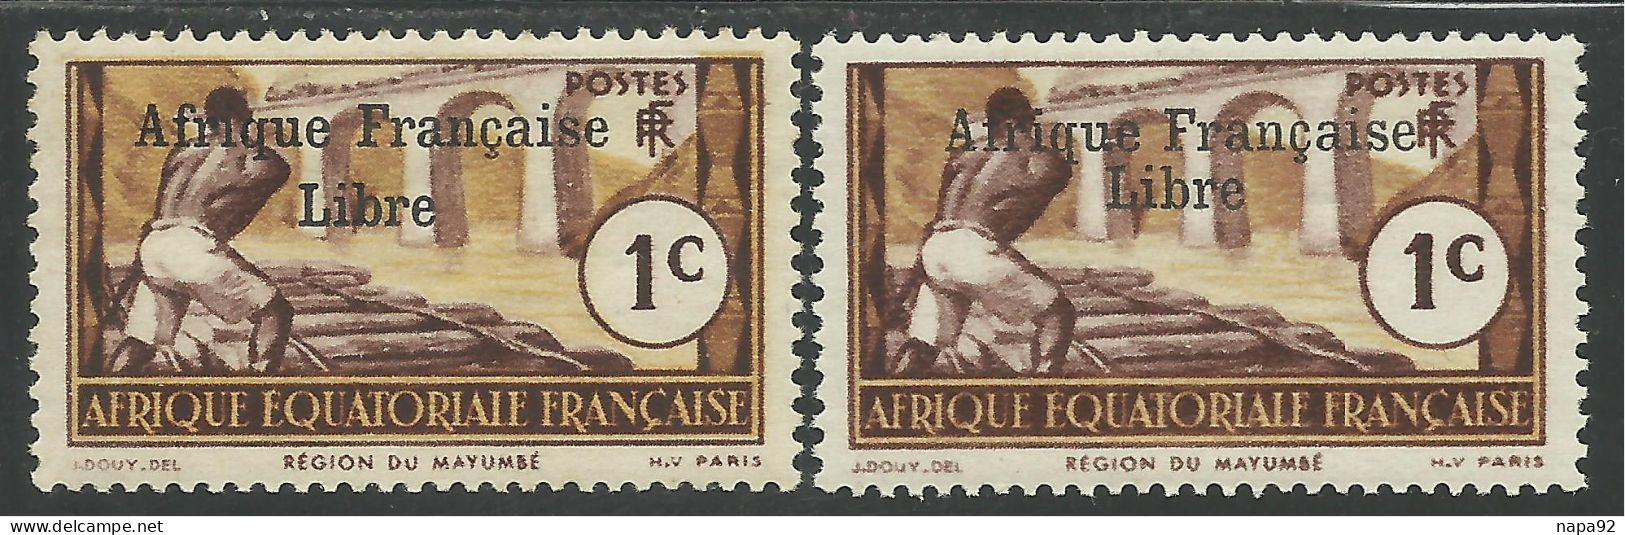 AFRIQUE EQUATORIALE FRANCAISE - AEF - A.E.F. - 1941 - YT 156** - 2ème TIRAGE - Ongebruikt